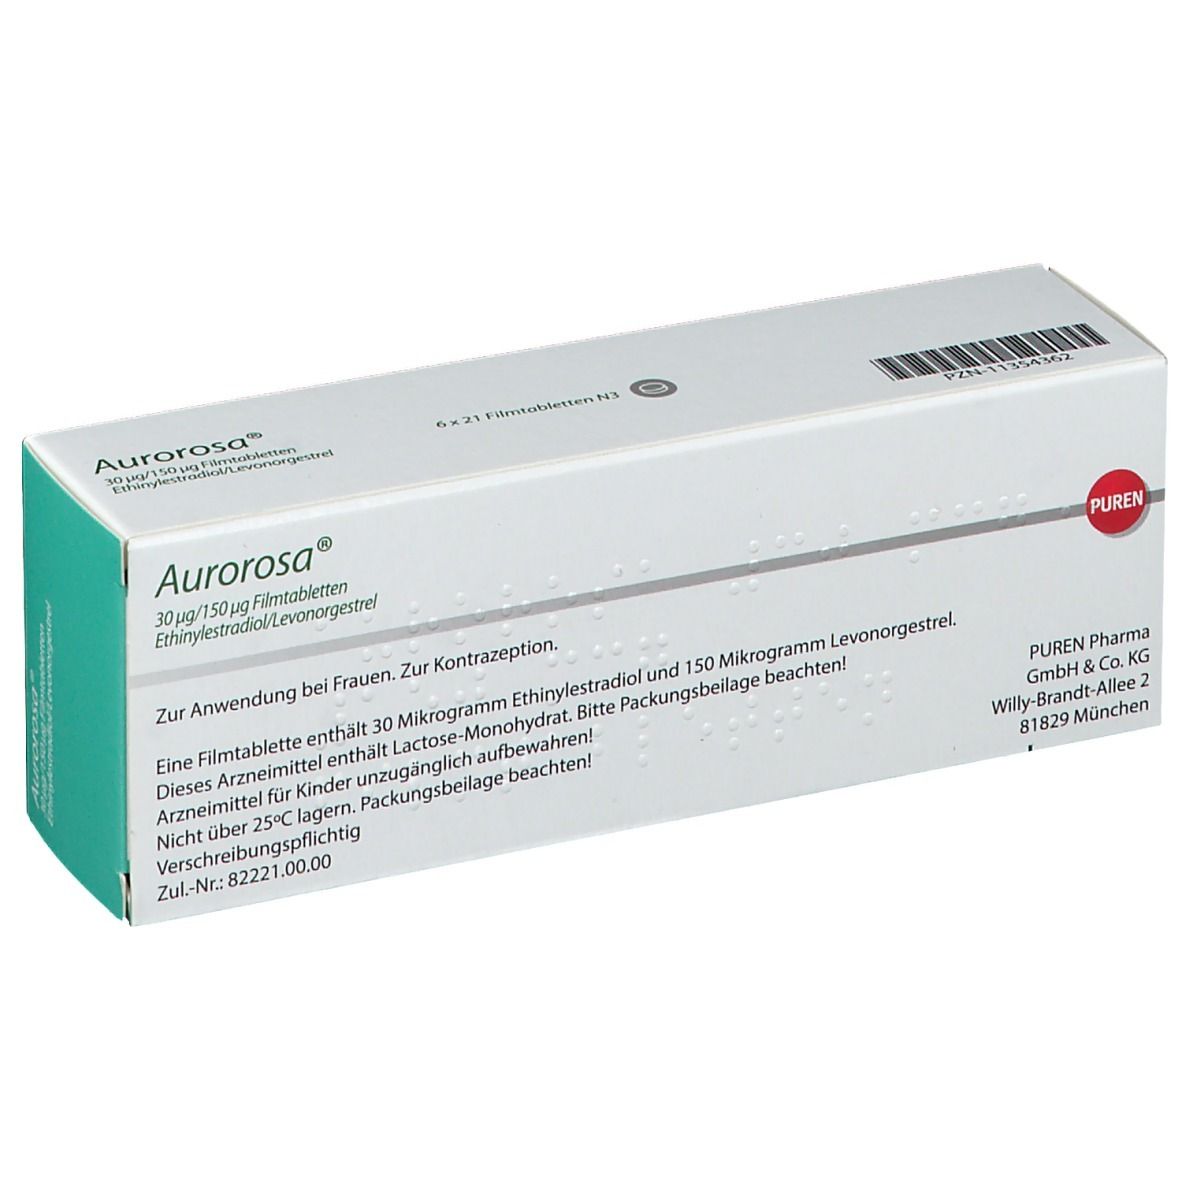 Aurorosa® 30 µg/150 µg